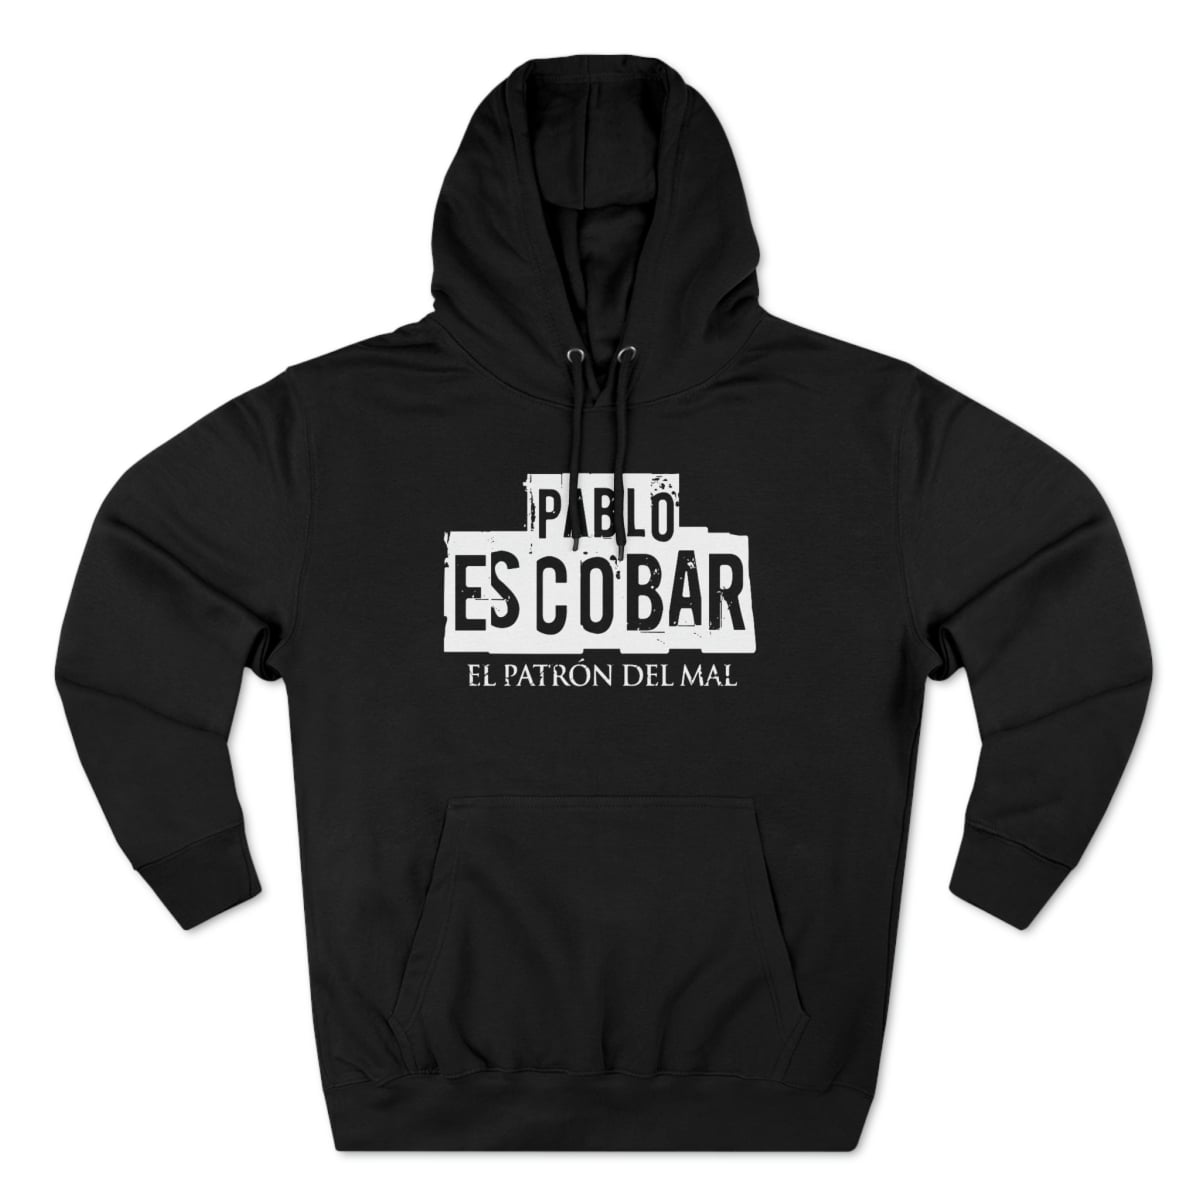 Pablo Escobar El Patron Del Mal Hoodie